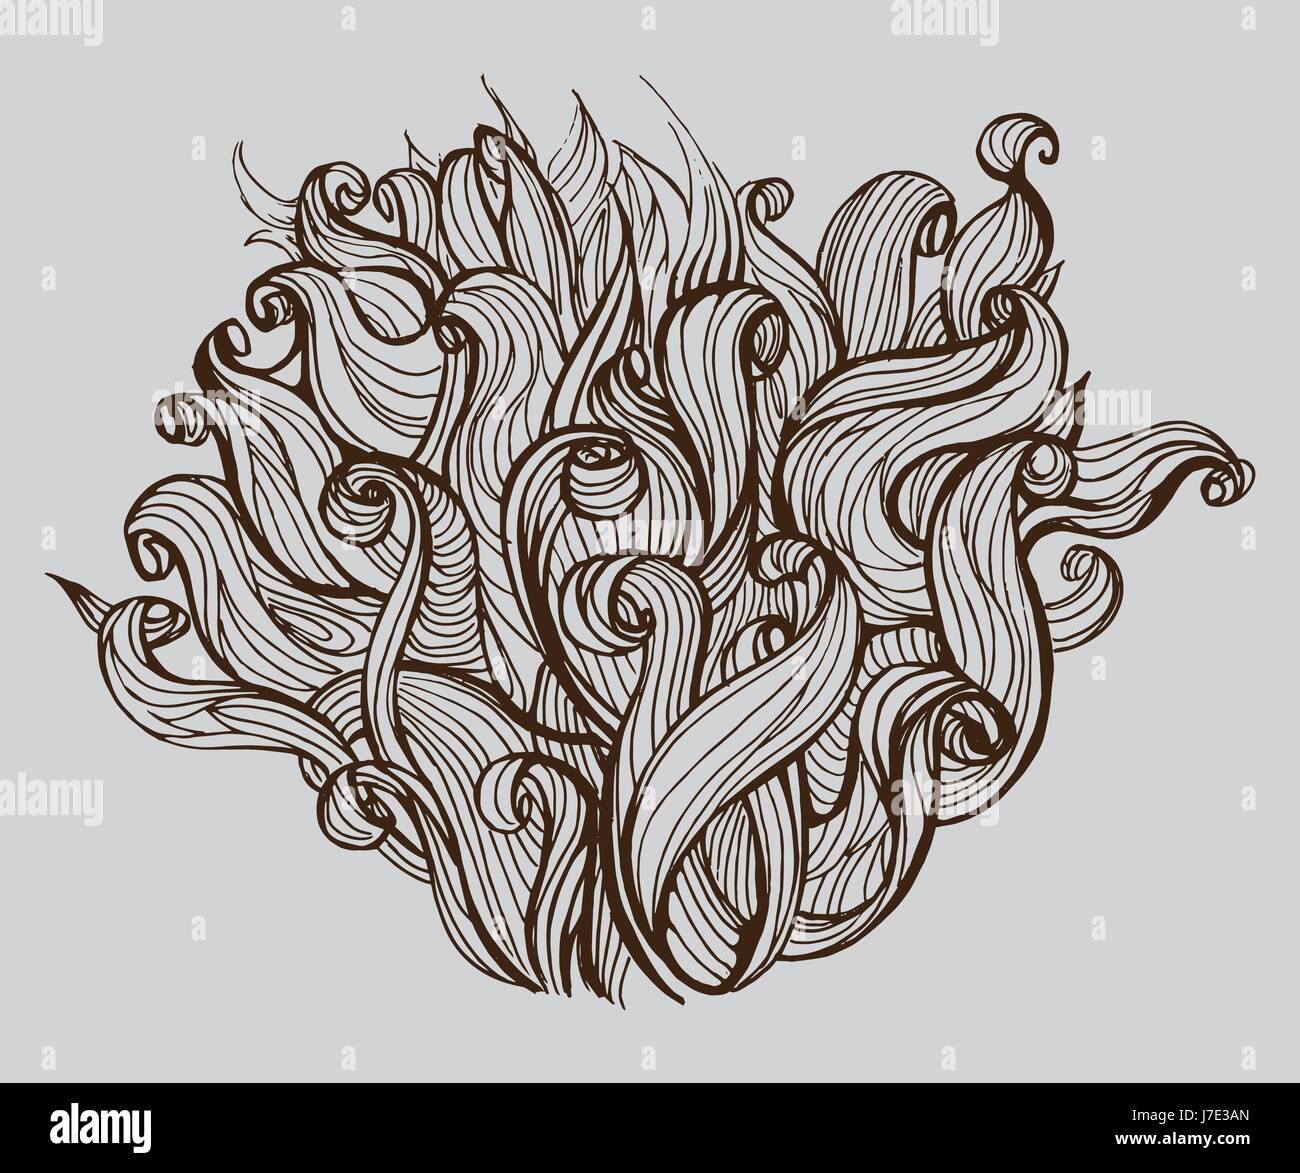 Bush, tête de cheveux, doodle vector illustration Image Vectorielle Stock -  Alamy